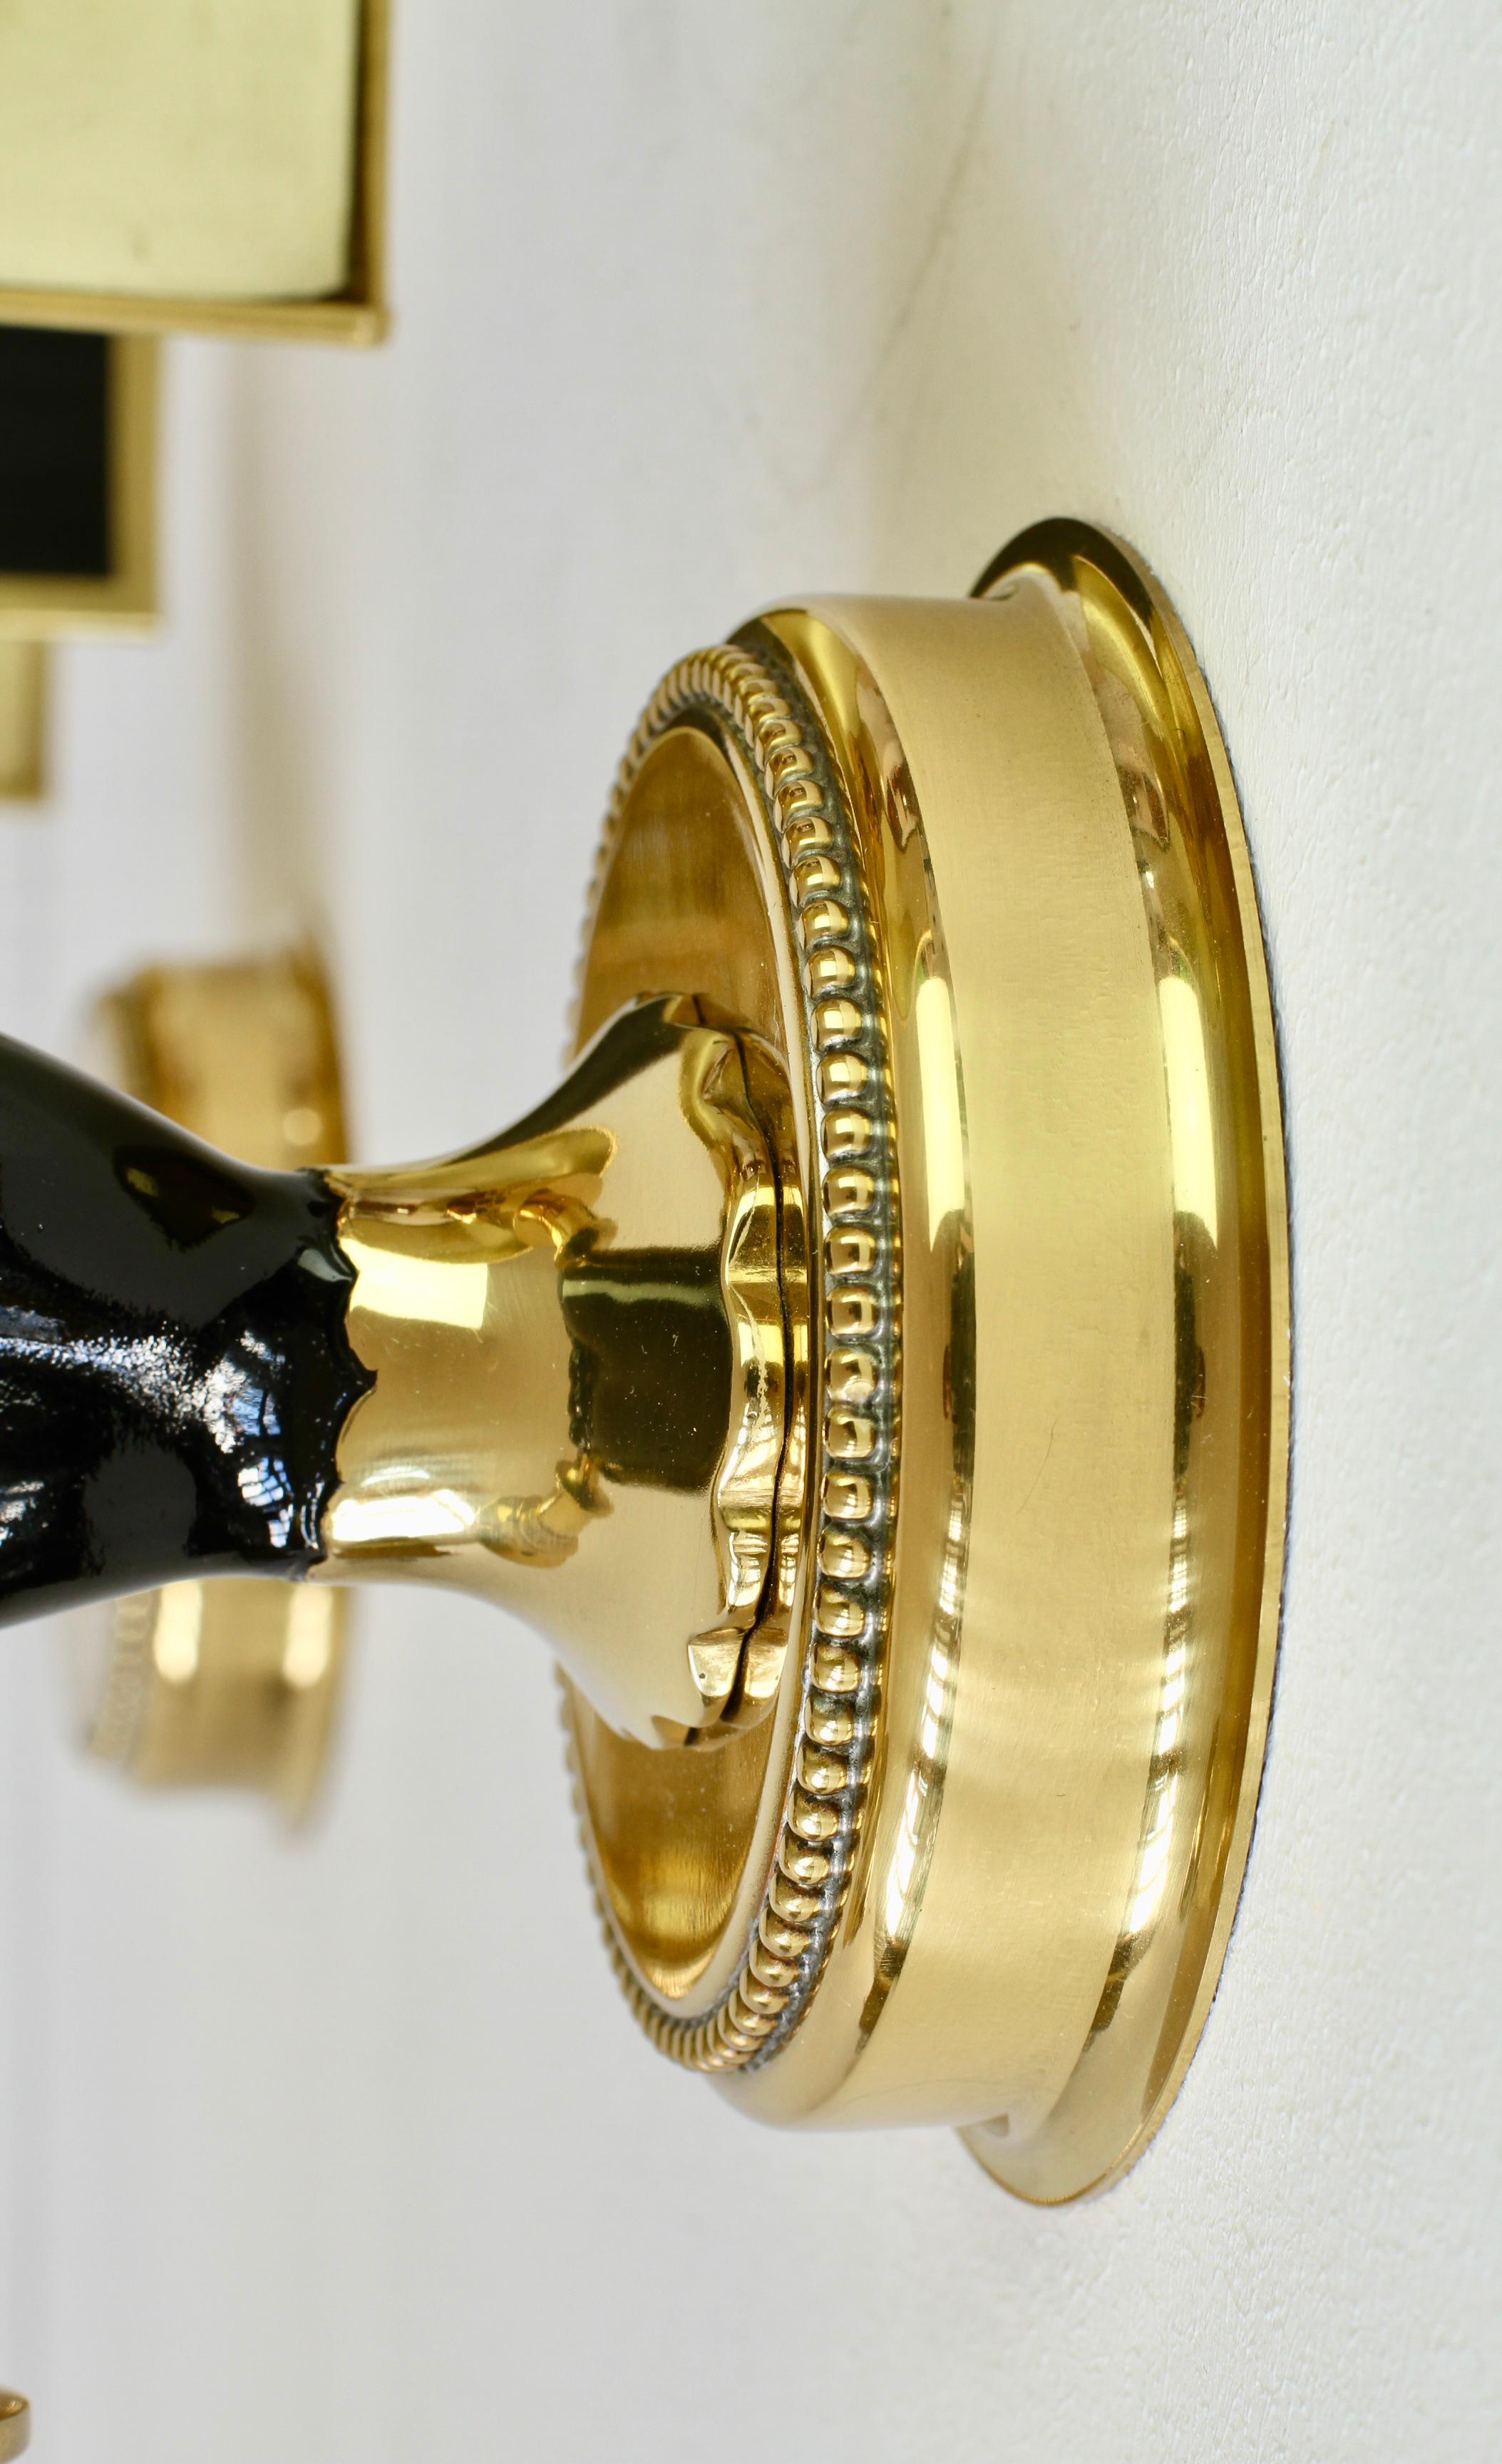 Maison Jansen Style Polished Brass Sconces by Vereinigte Werkstätten München For Sale 7